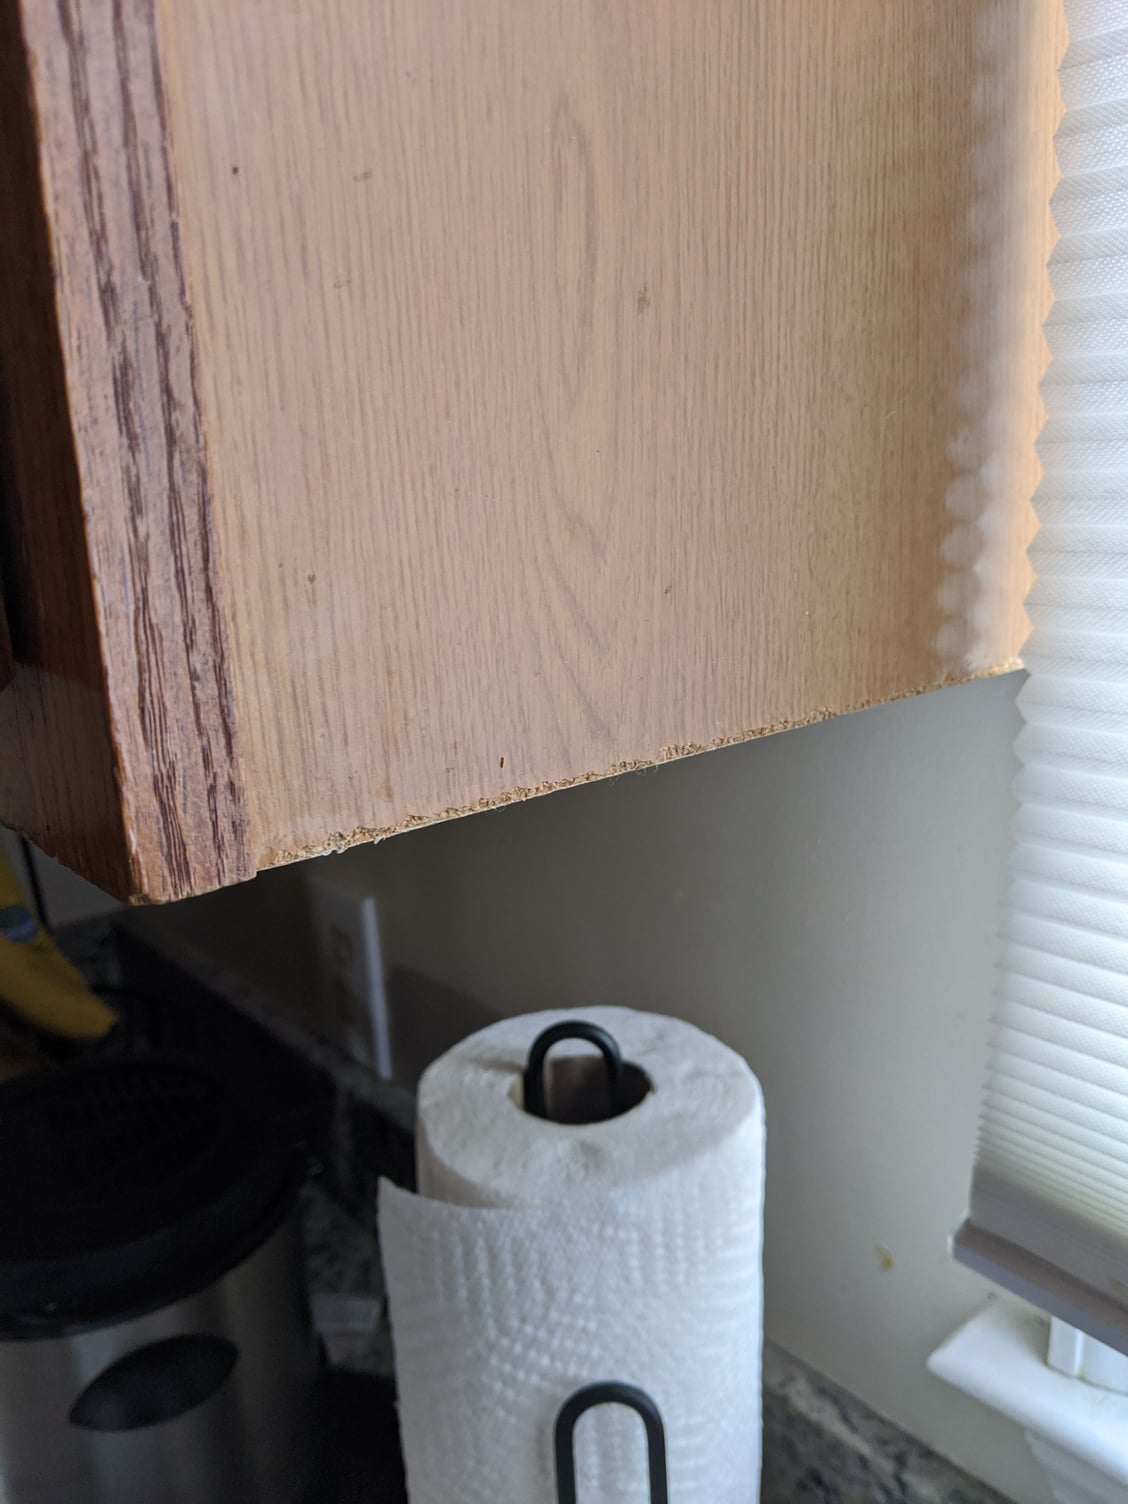 Fixing peeling veneer on kitchen cabinets. - DoItYourself.com